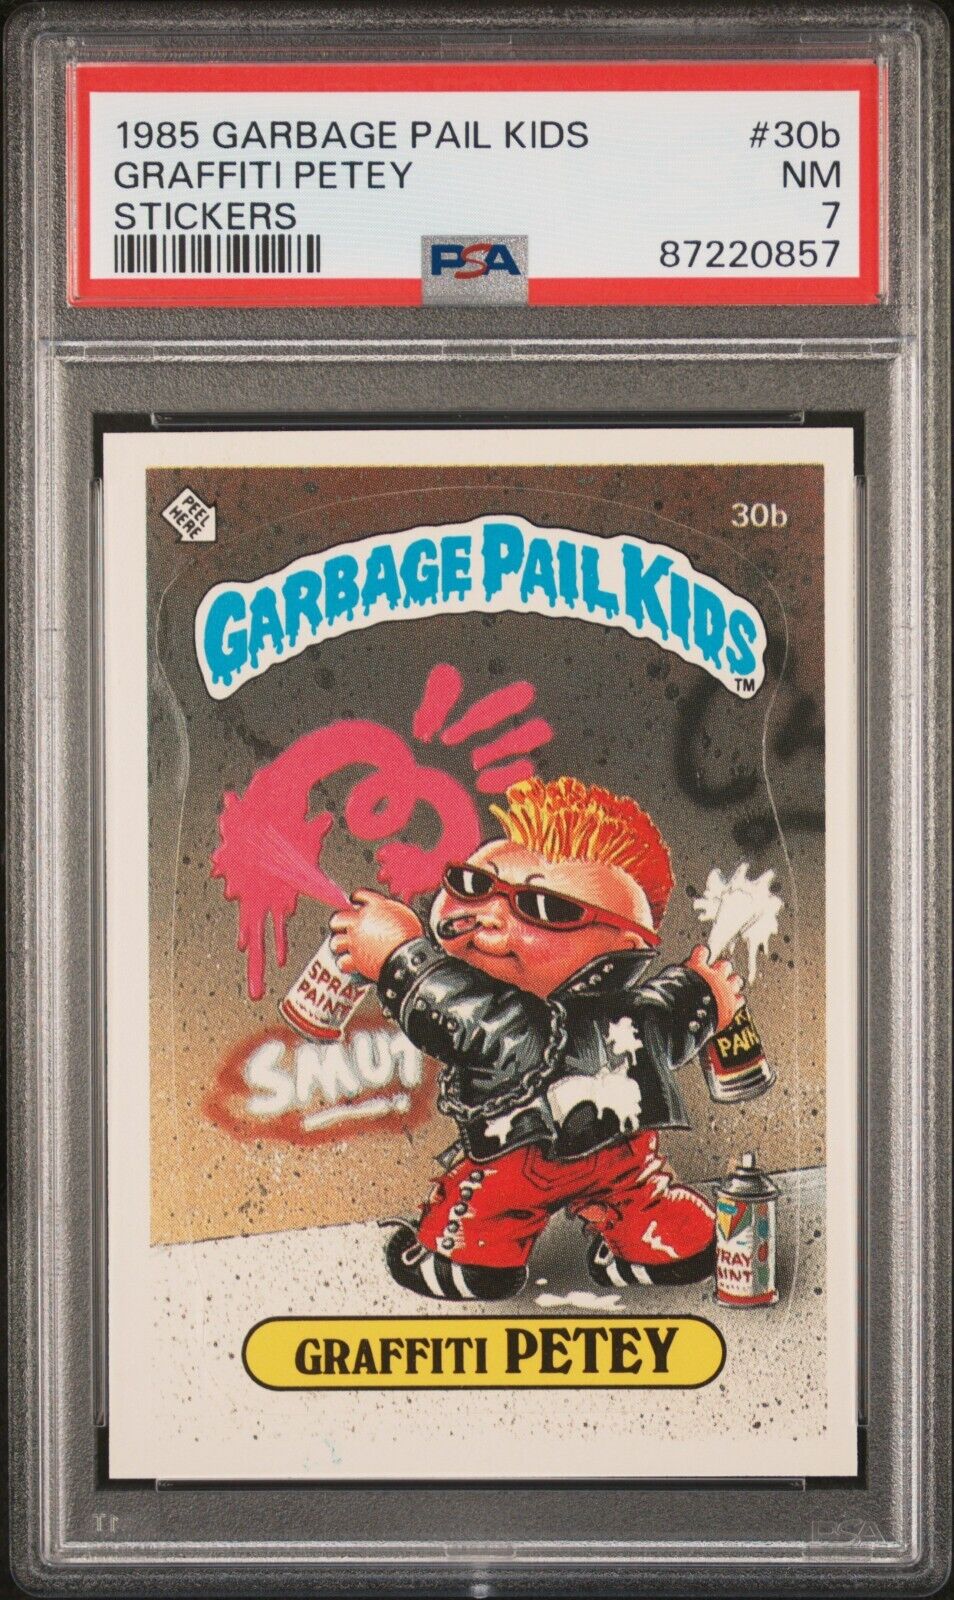 1985 Topps OS1 Garbage Pail Kids Series 1 Graffiti Petey 30b Matte Card PSA 7 NM